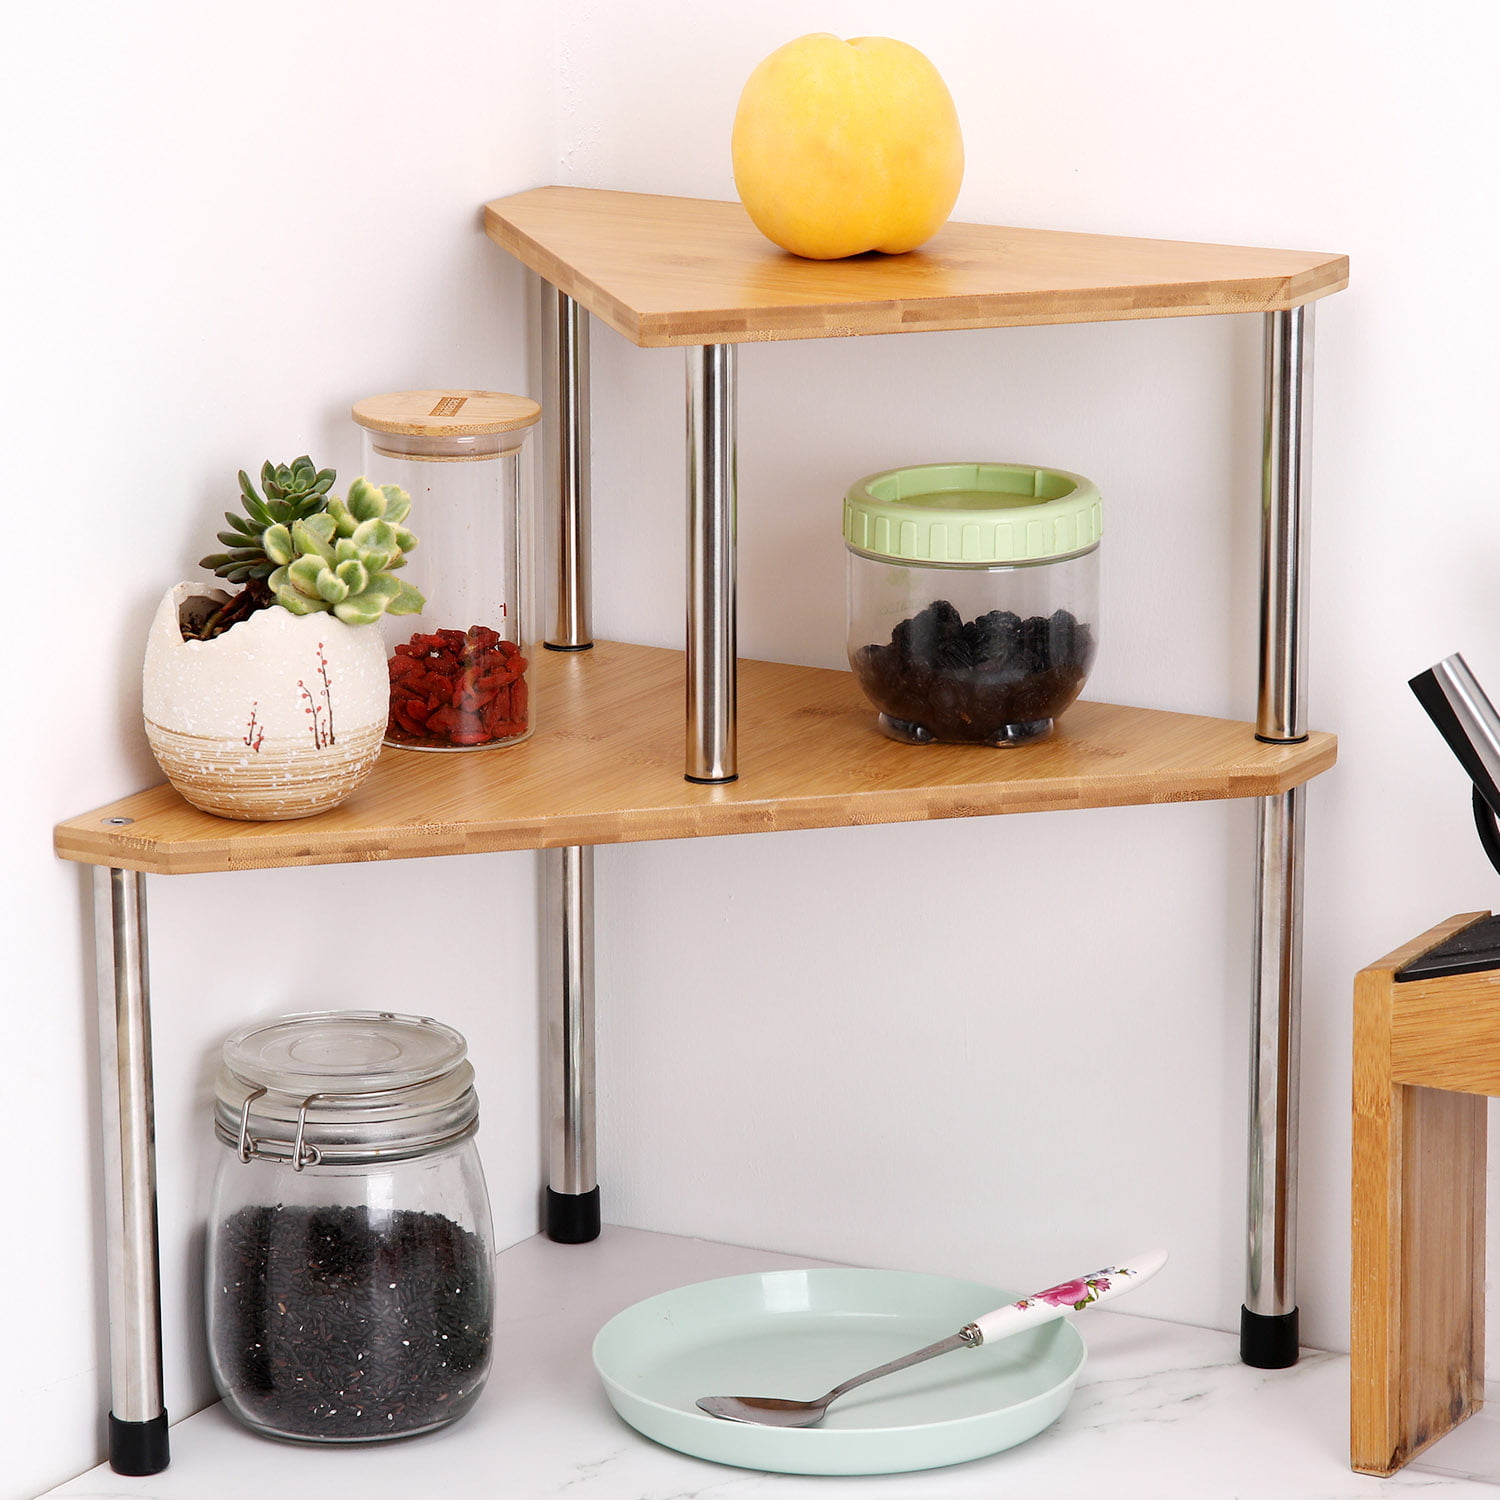 2 Tier Free Standing Corner Shelf Rack - Kitchen Counter Top